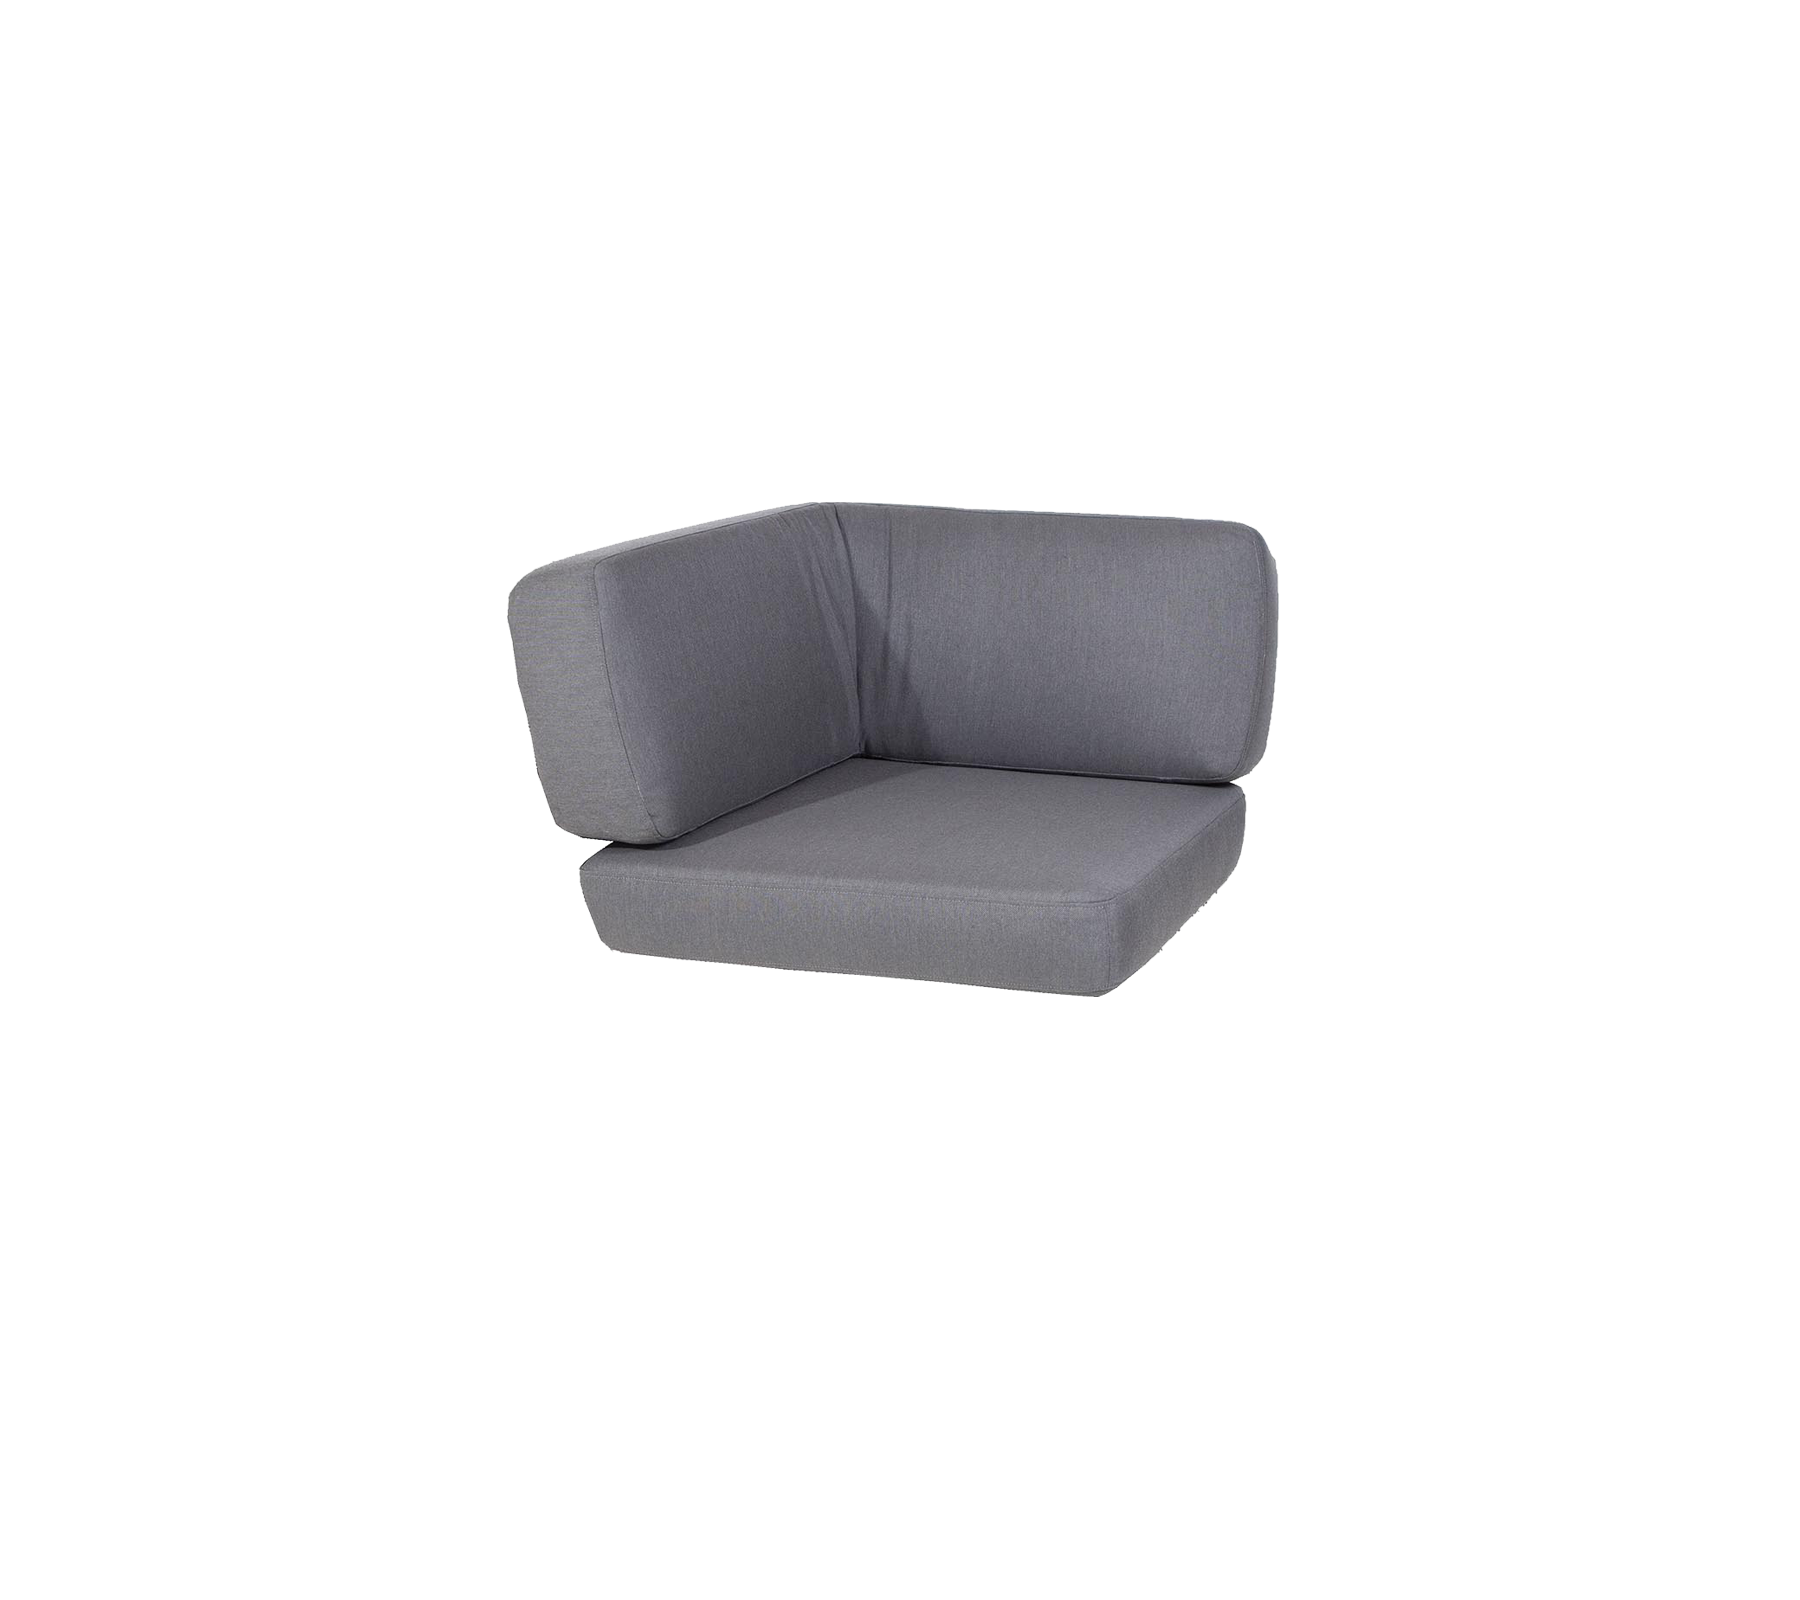 Cushion set, Savannah corner module